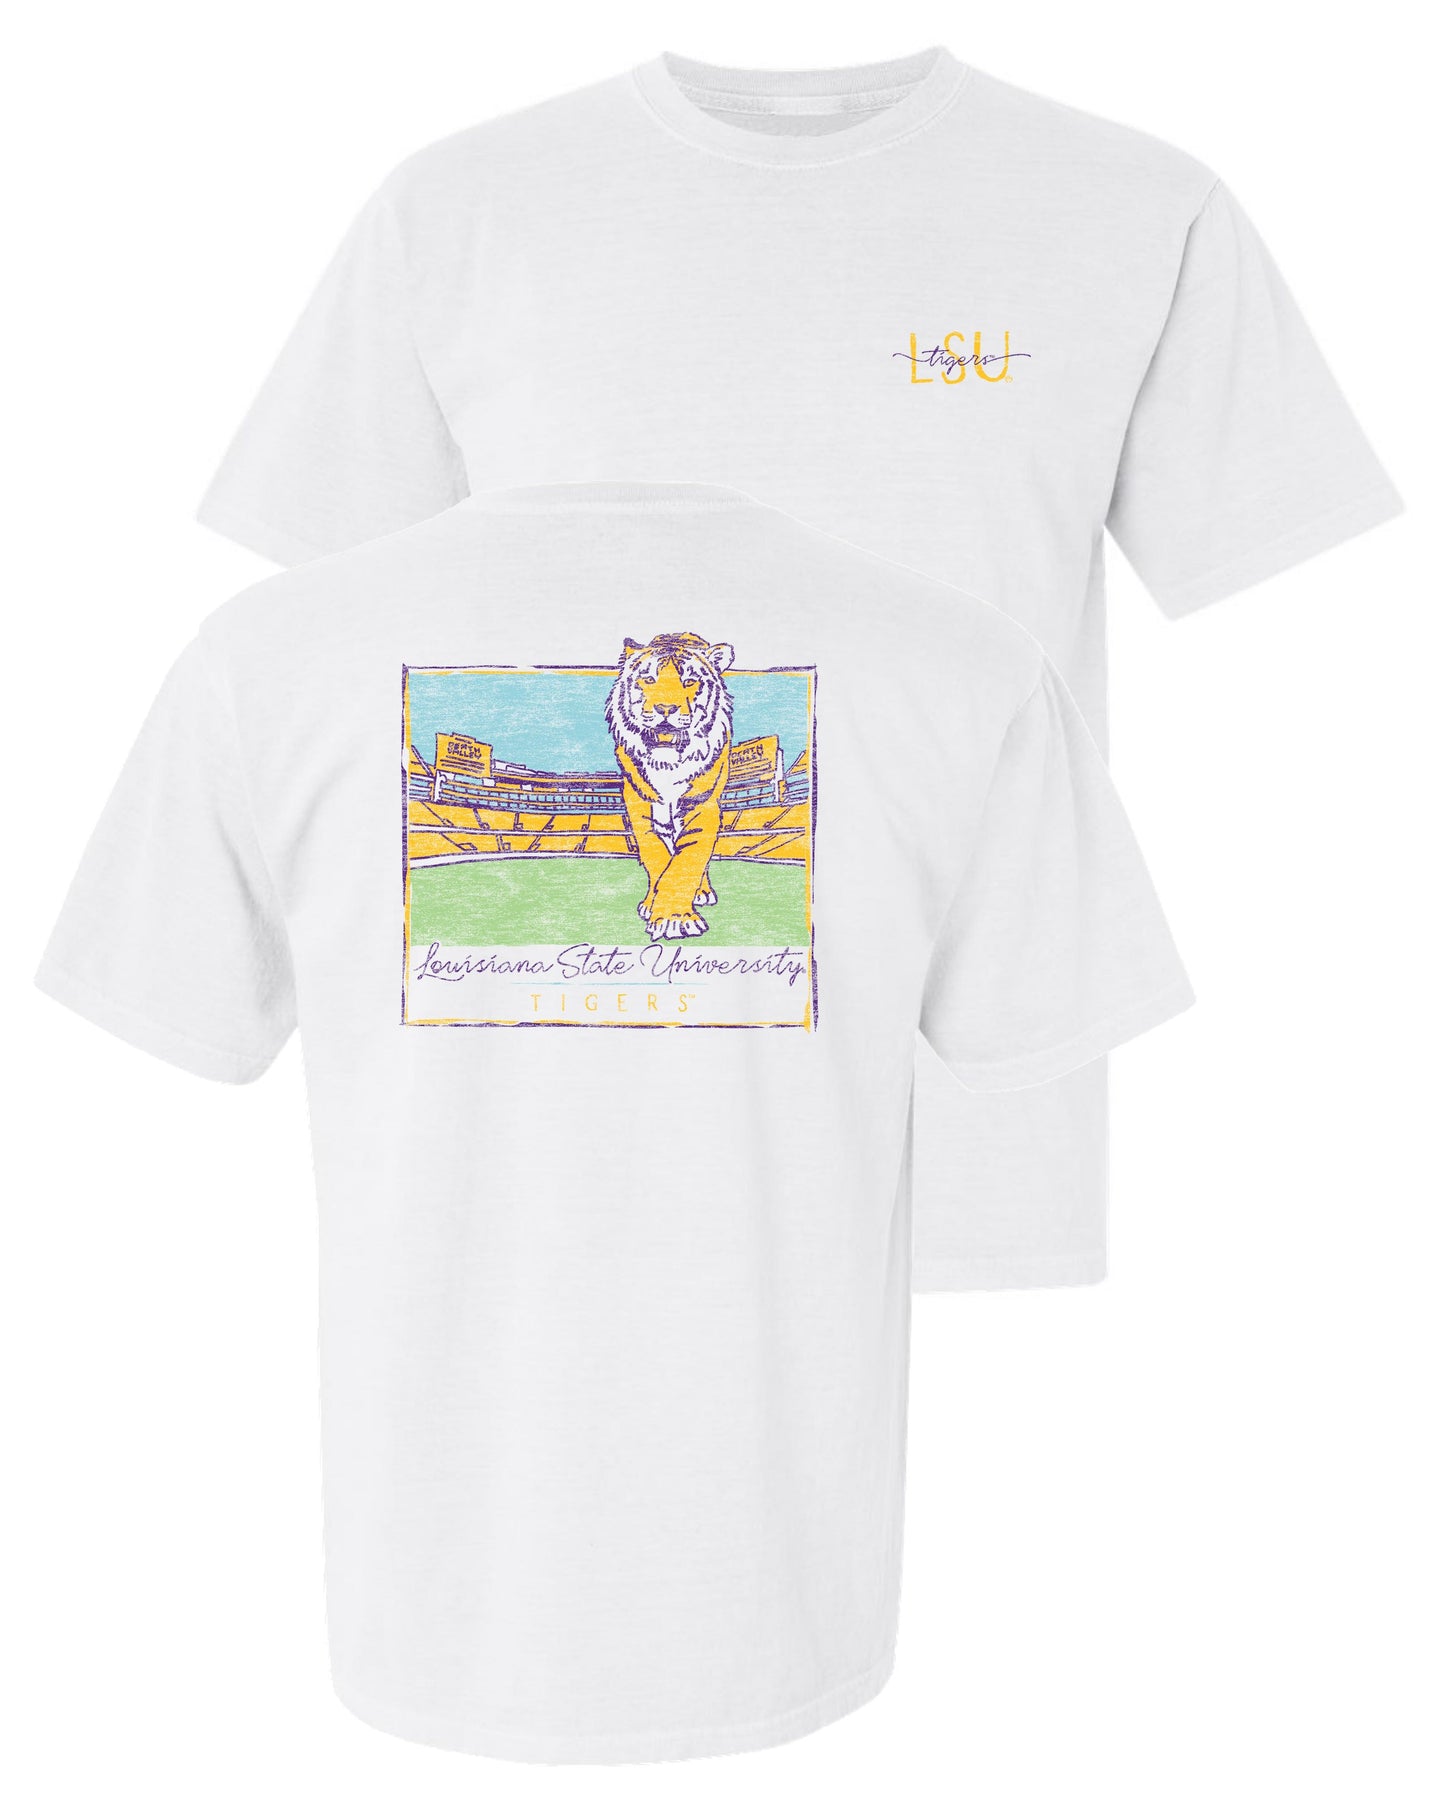 LSU Tigers T-Shirt Crewneck Comfort Colors